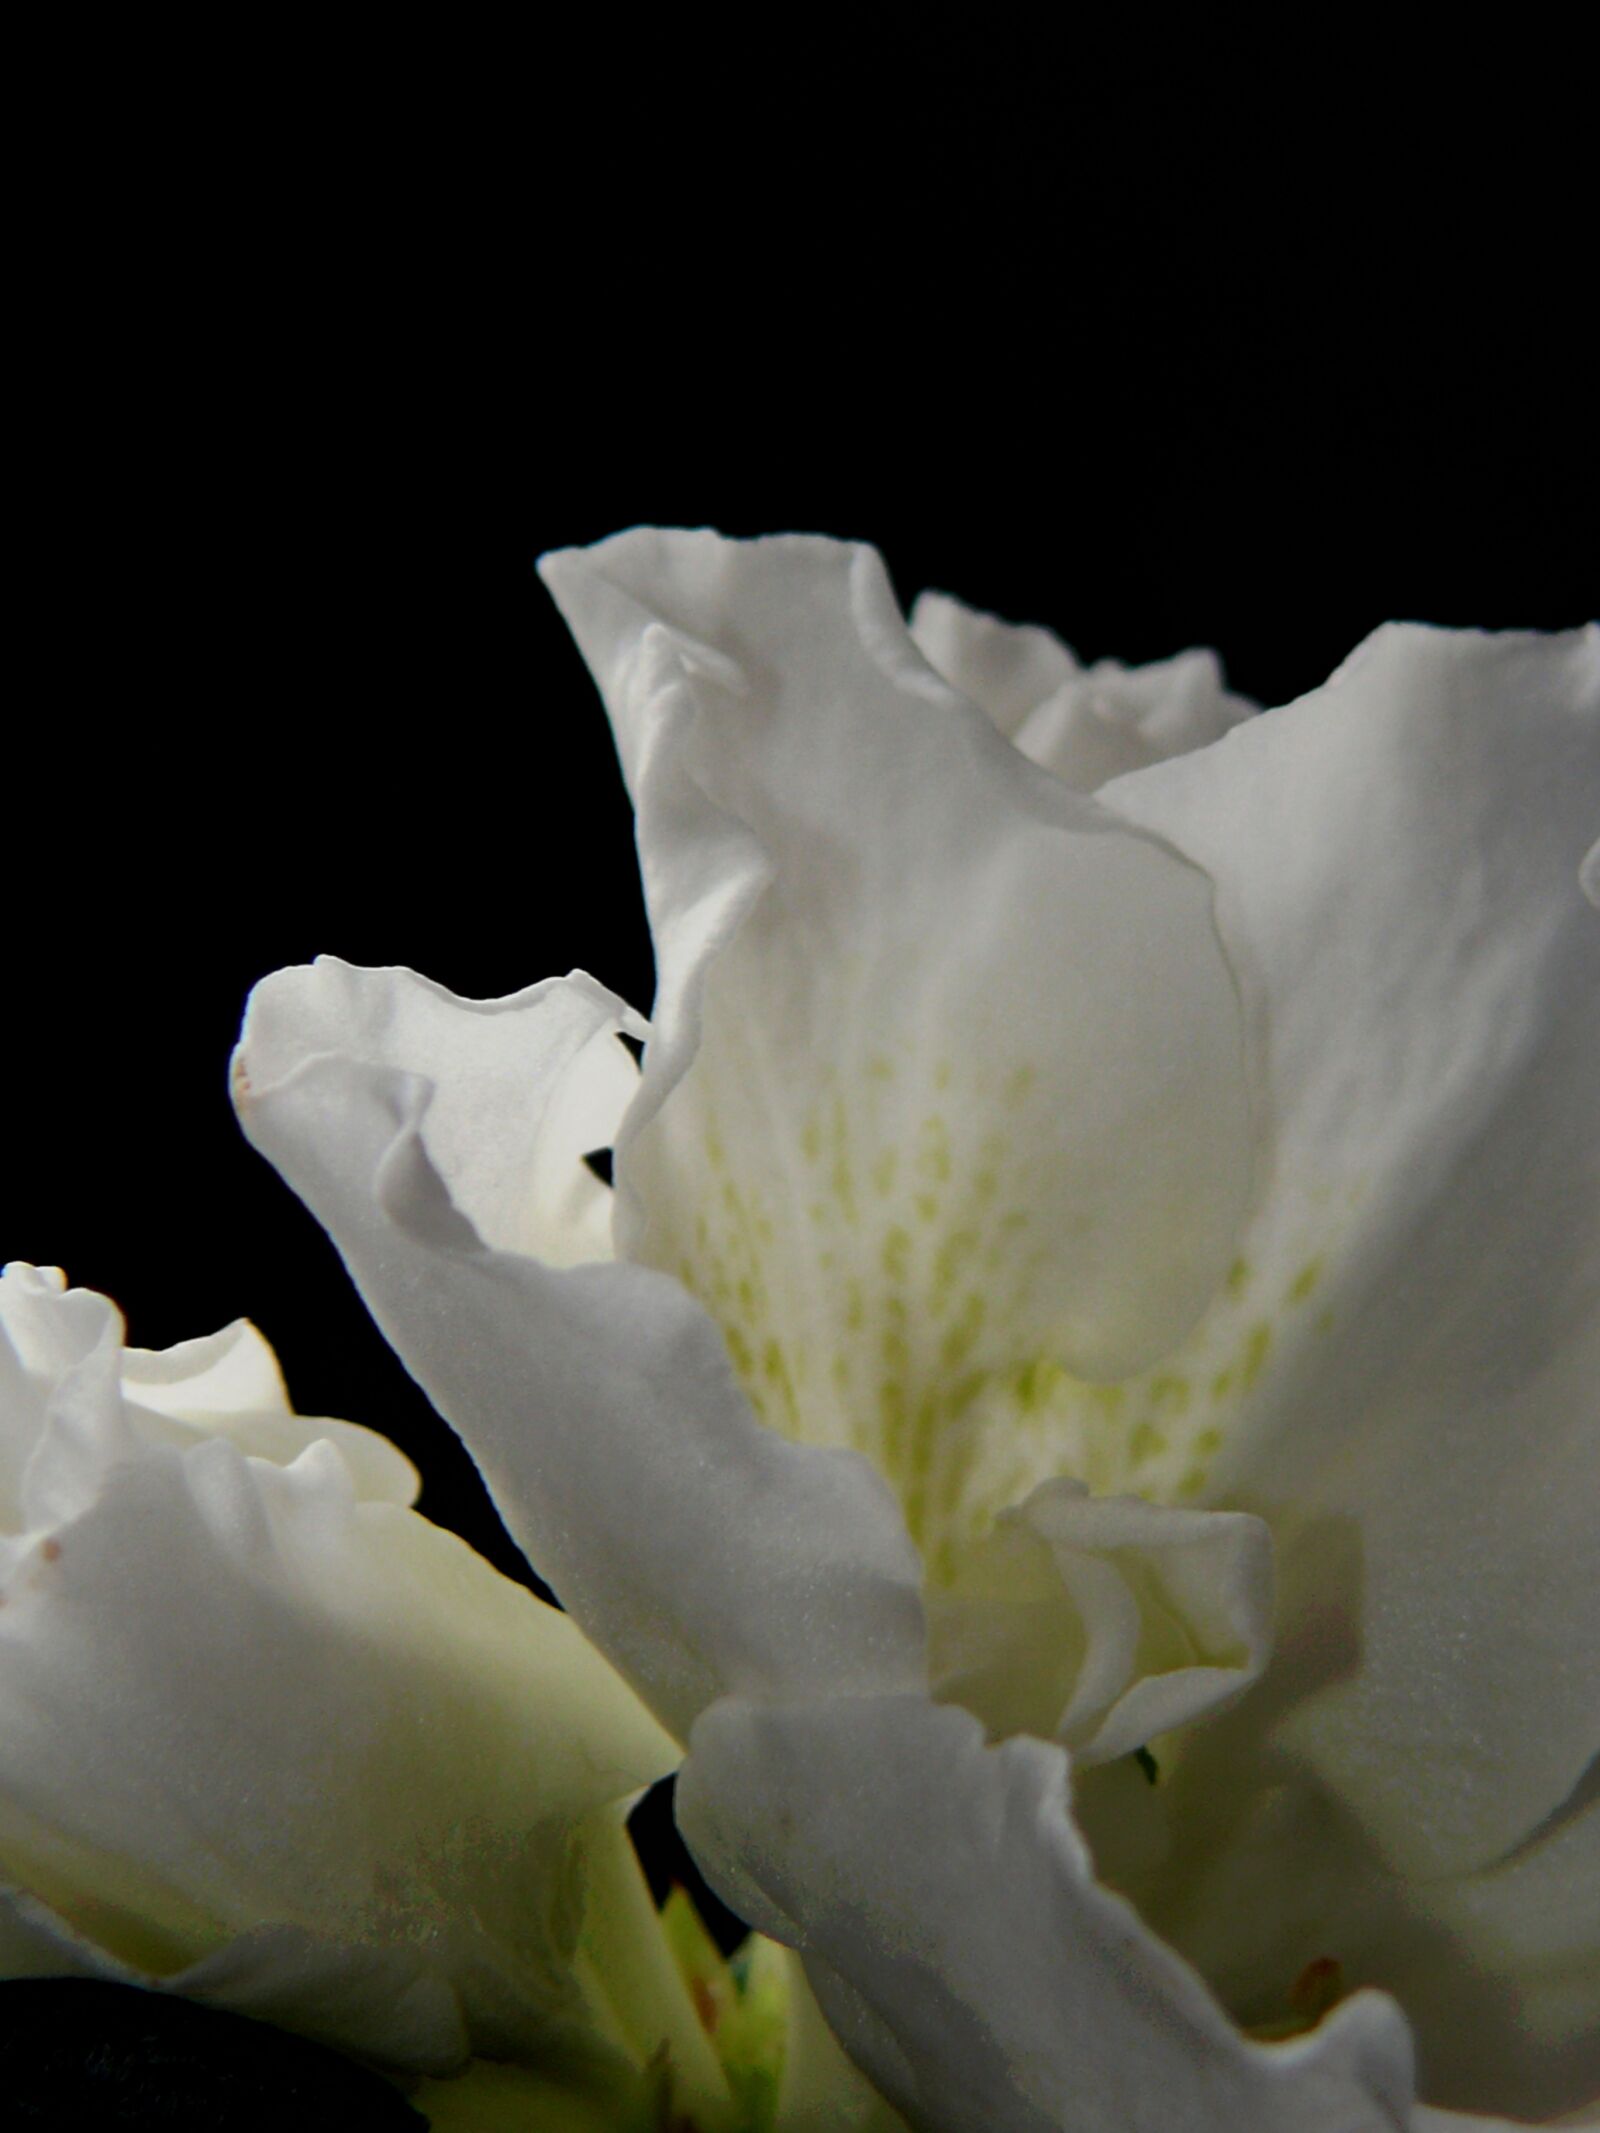 Leica V-LUX 1 sample photo. Poppy, white poppy, mohngewaechs photography